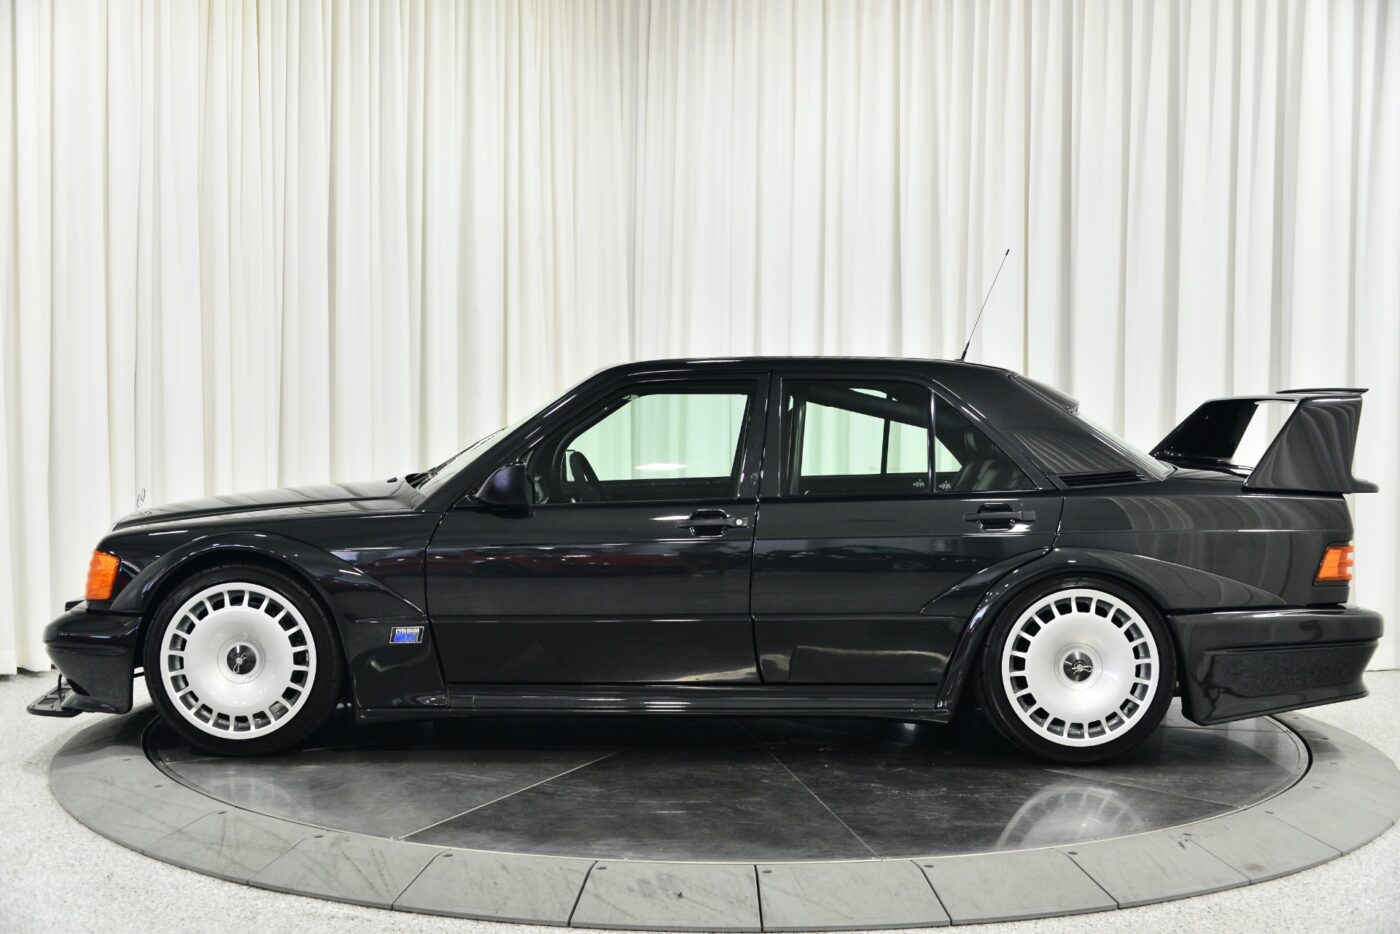 1990 Mercedes-Benz 190E Evolution II acabado en azul-negro metalizado